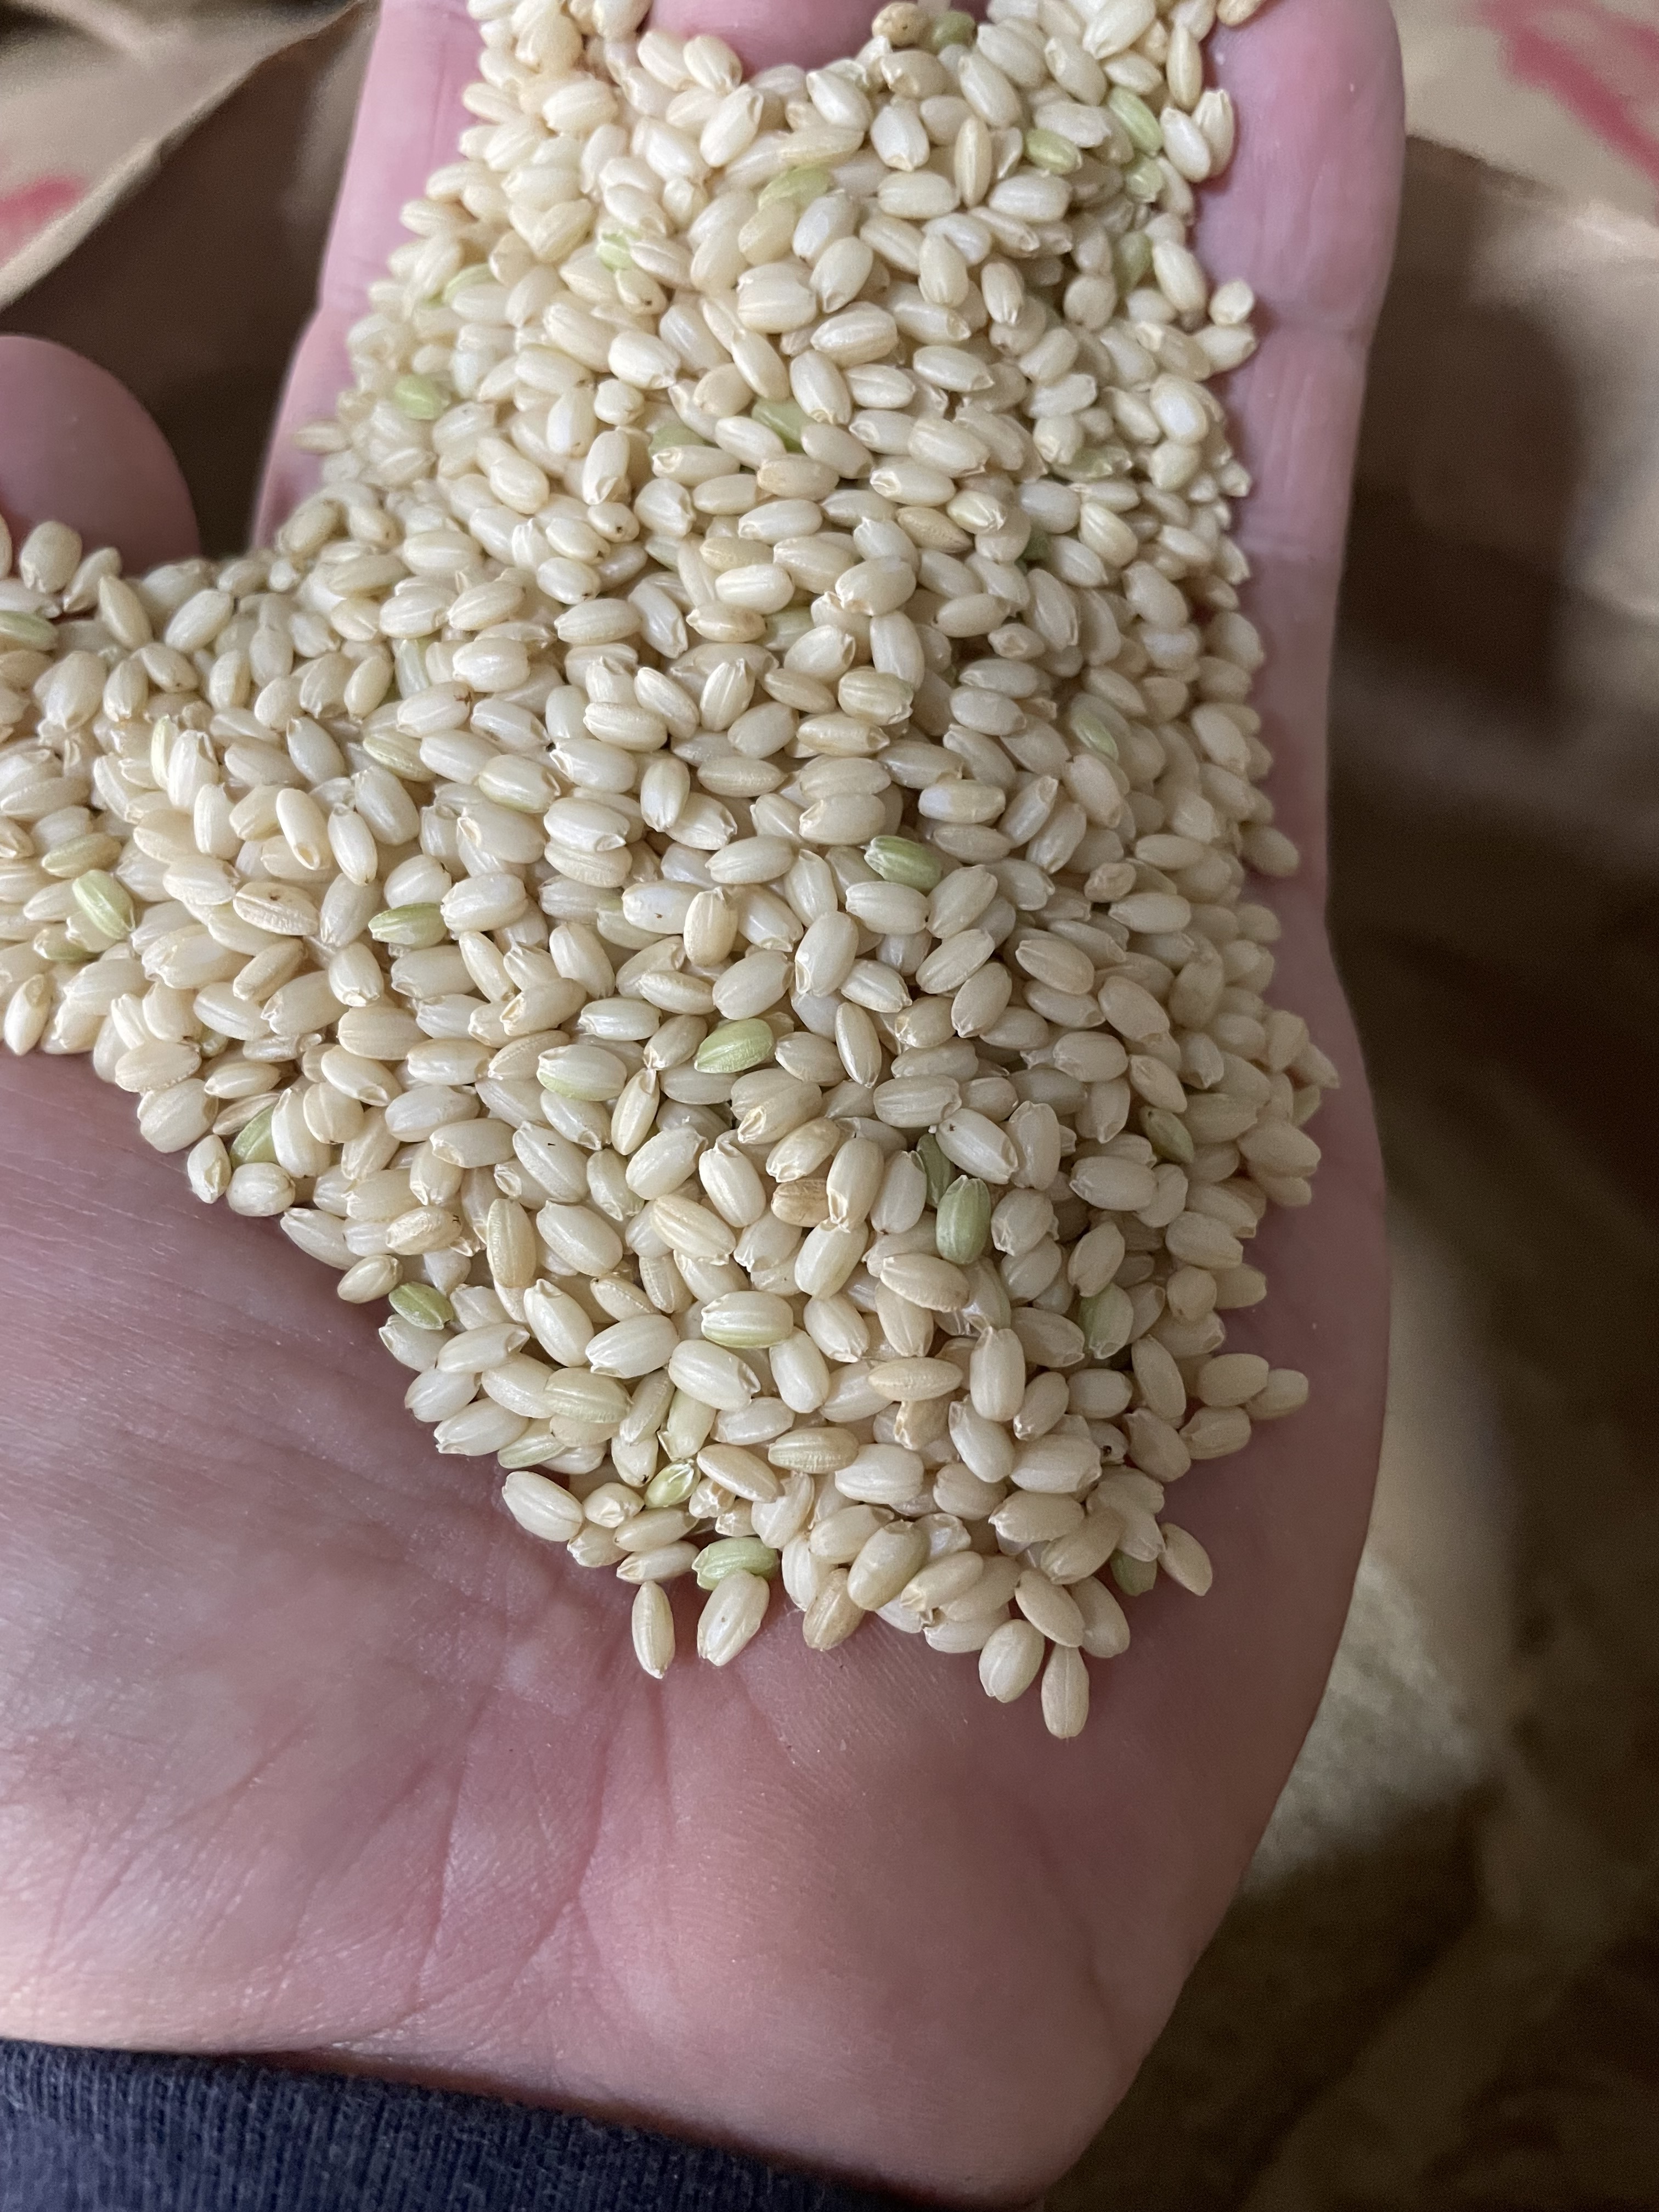 はなまる農園の新米コシヒカリ玄米30キロ - 米